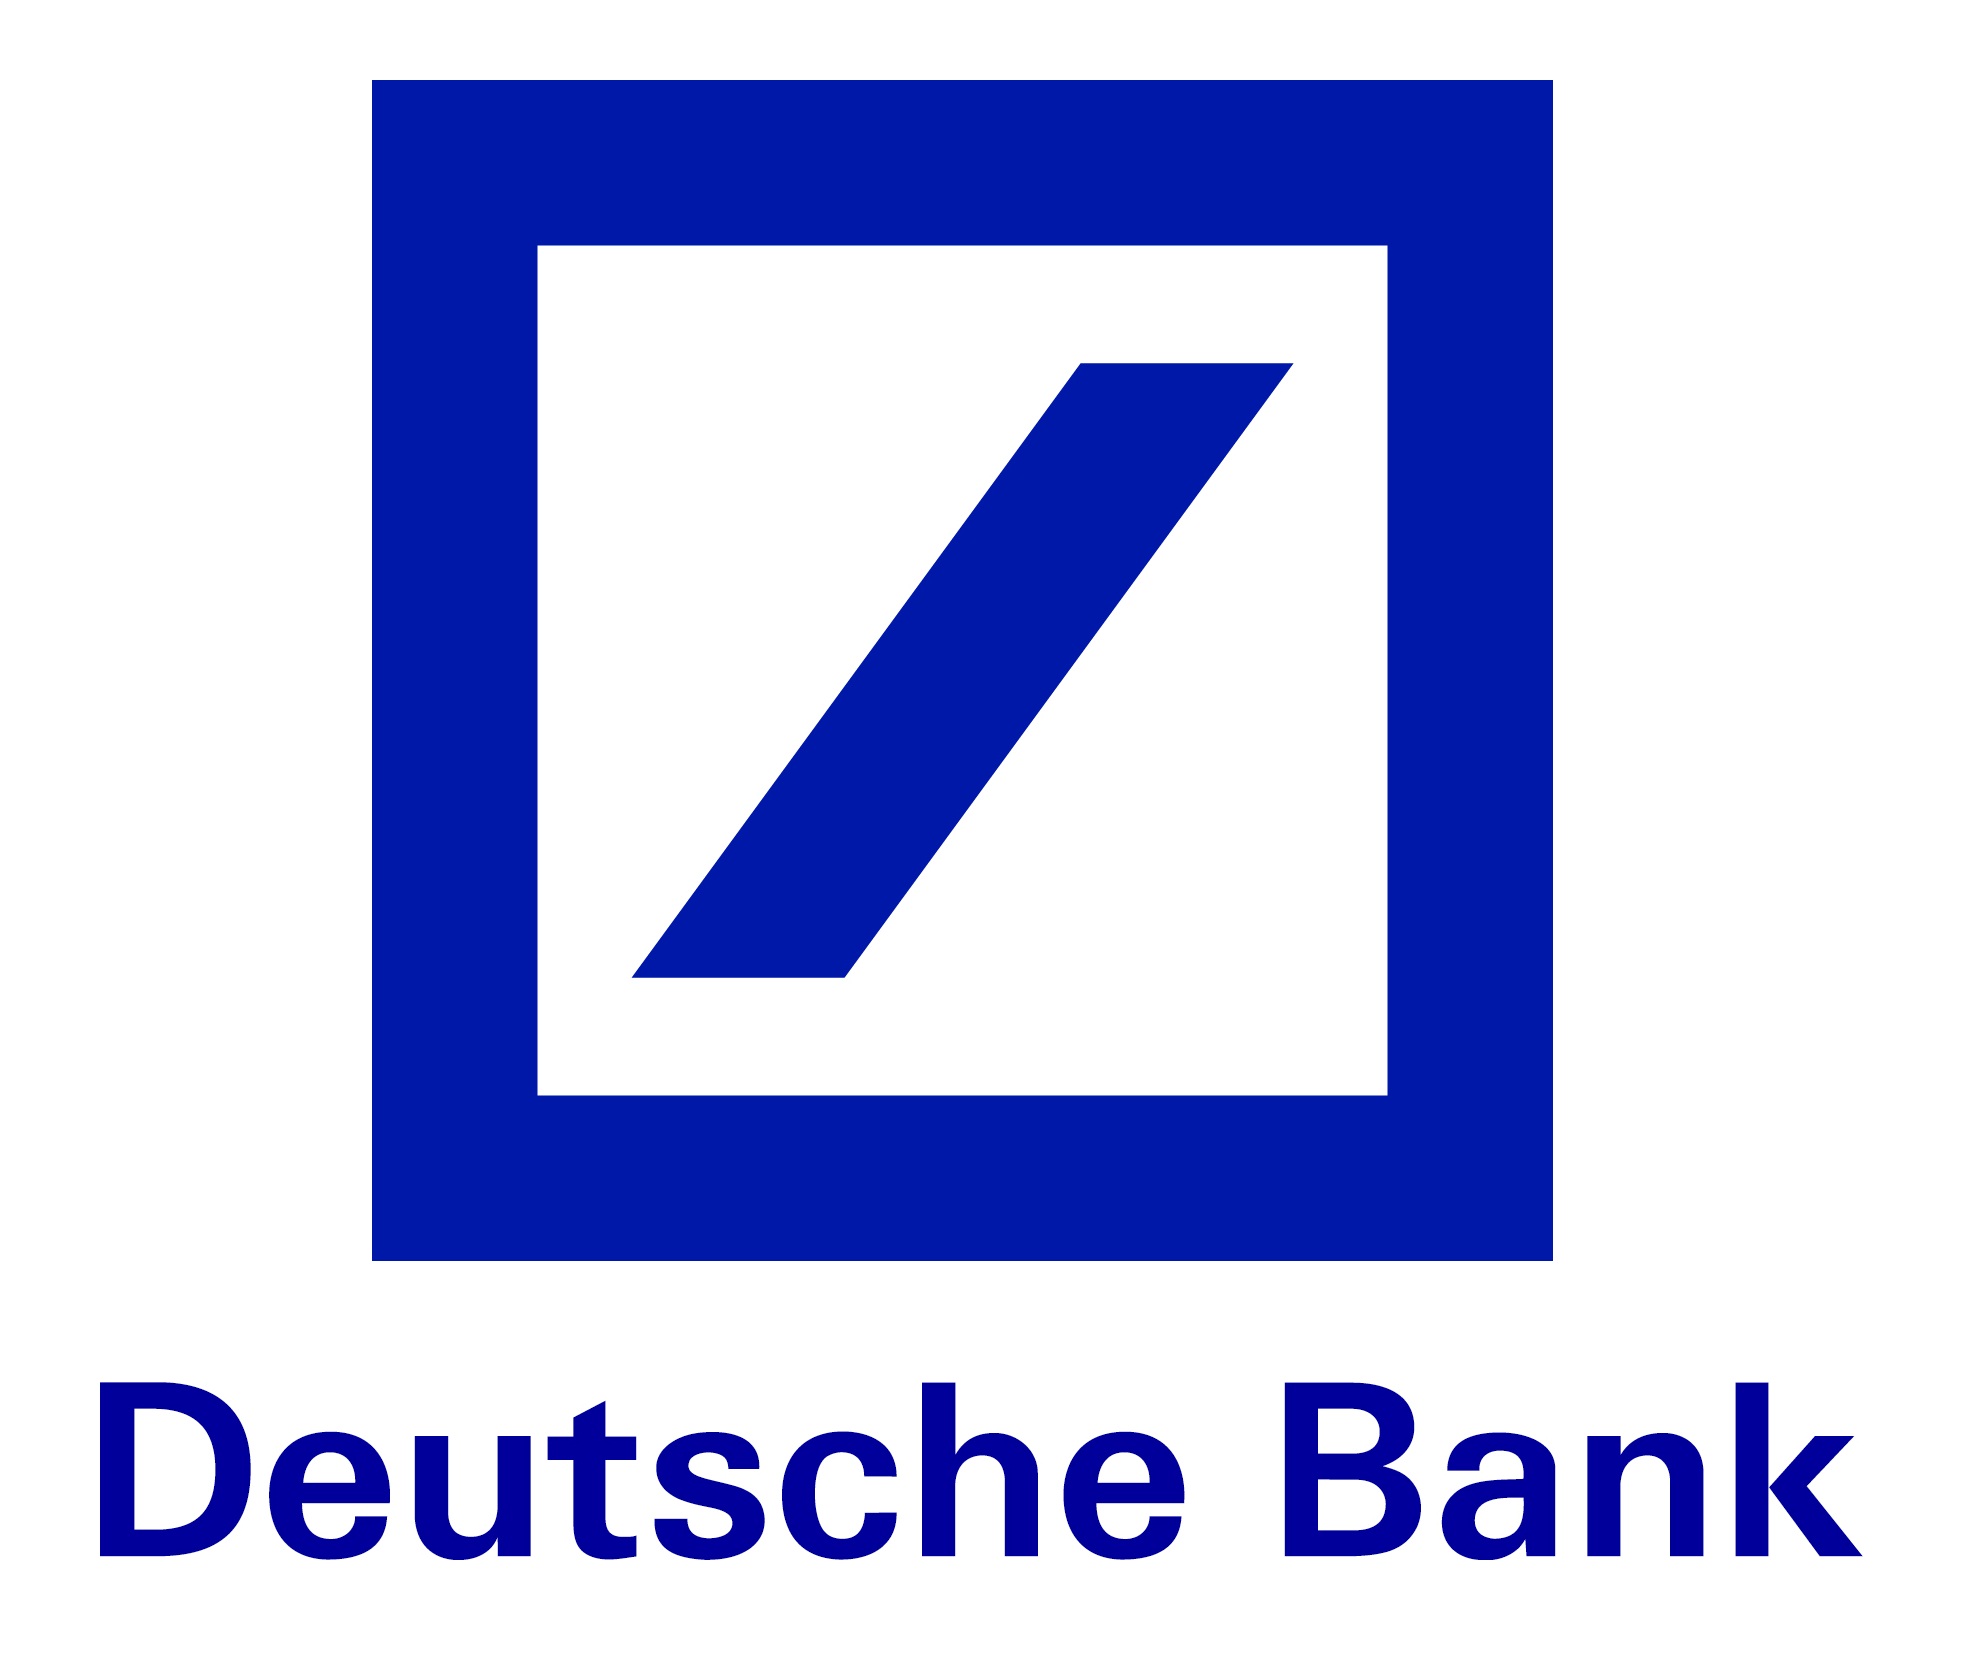 Goldpreis entwickelt sich gemäss Deutsche Bank besser als Staatsanleihen